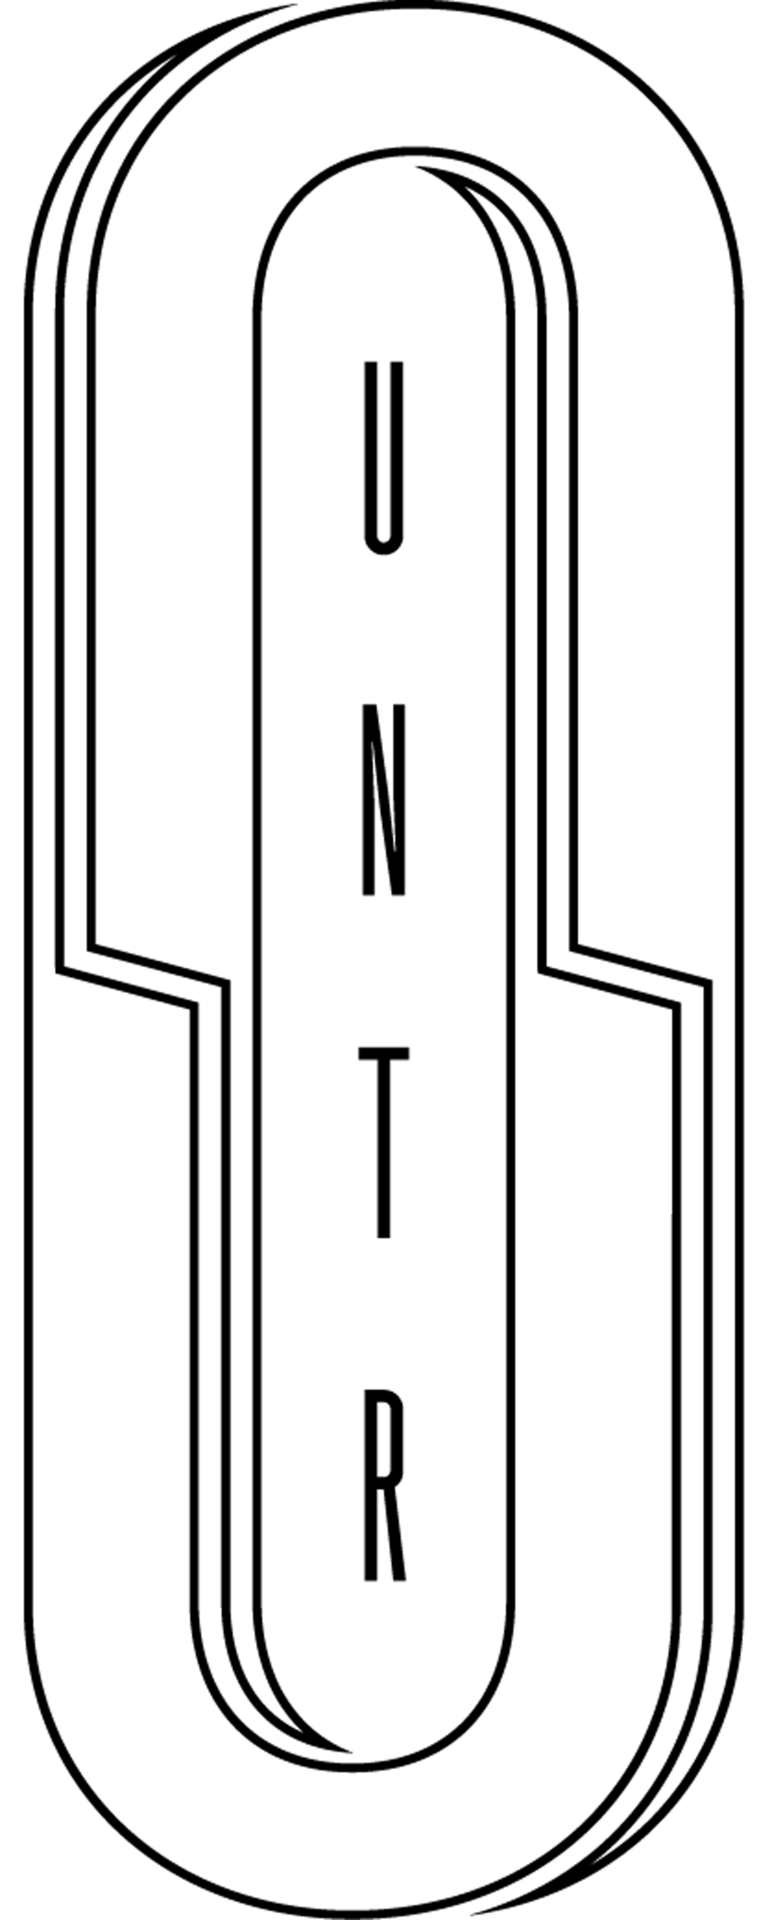 UNTR logo kivky bl